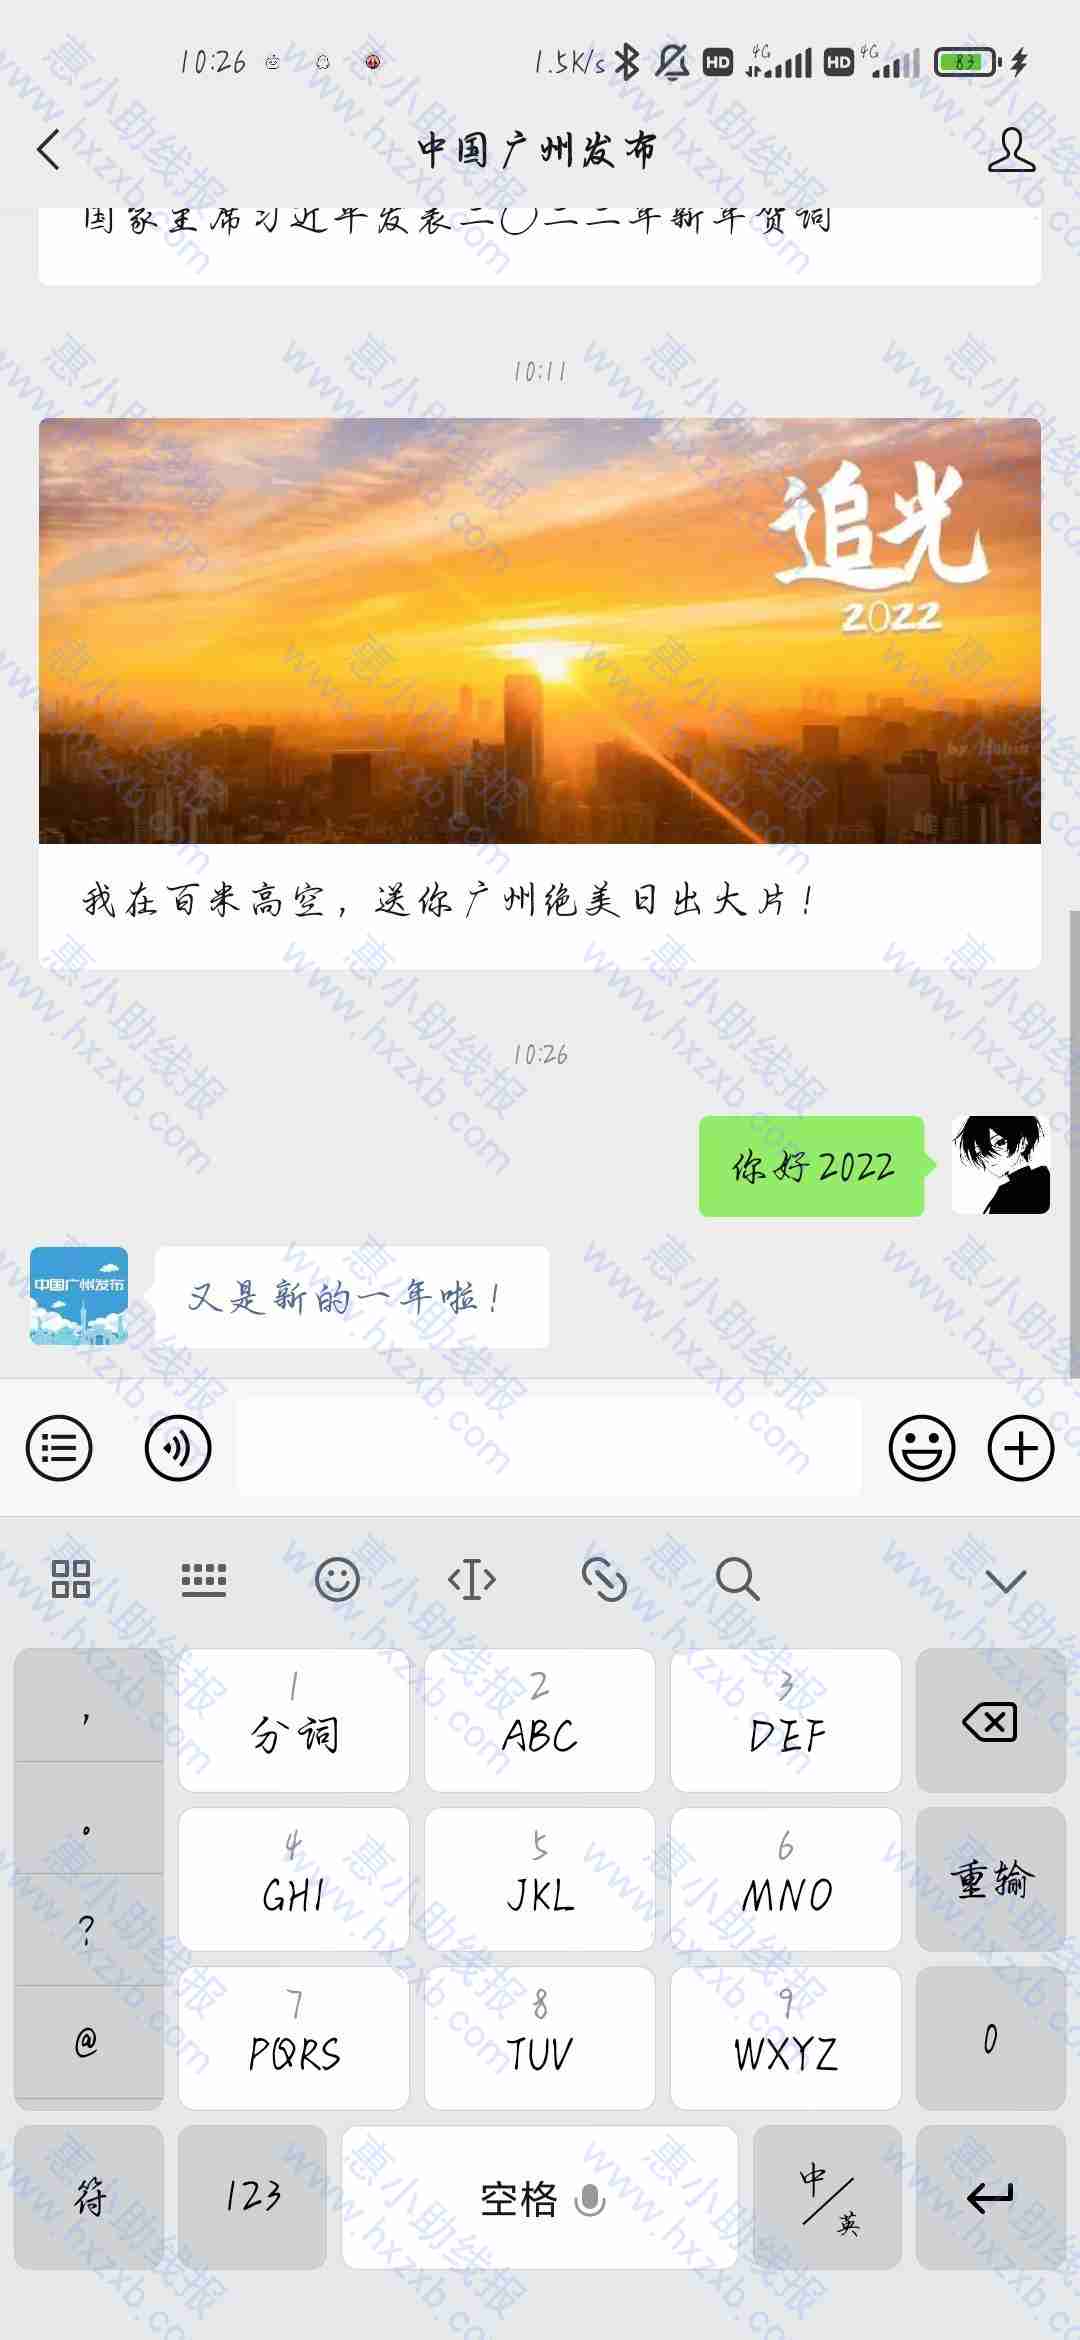 中国广州发布抽红包